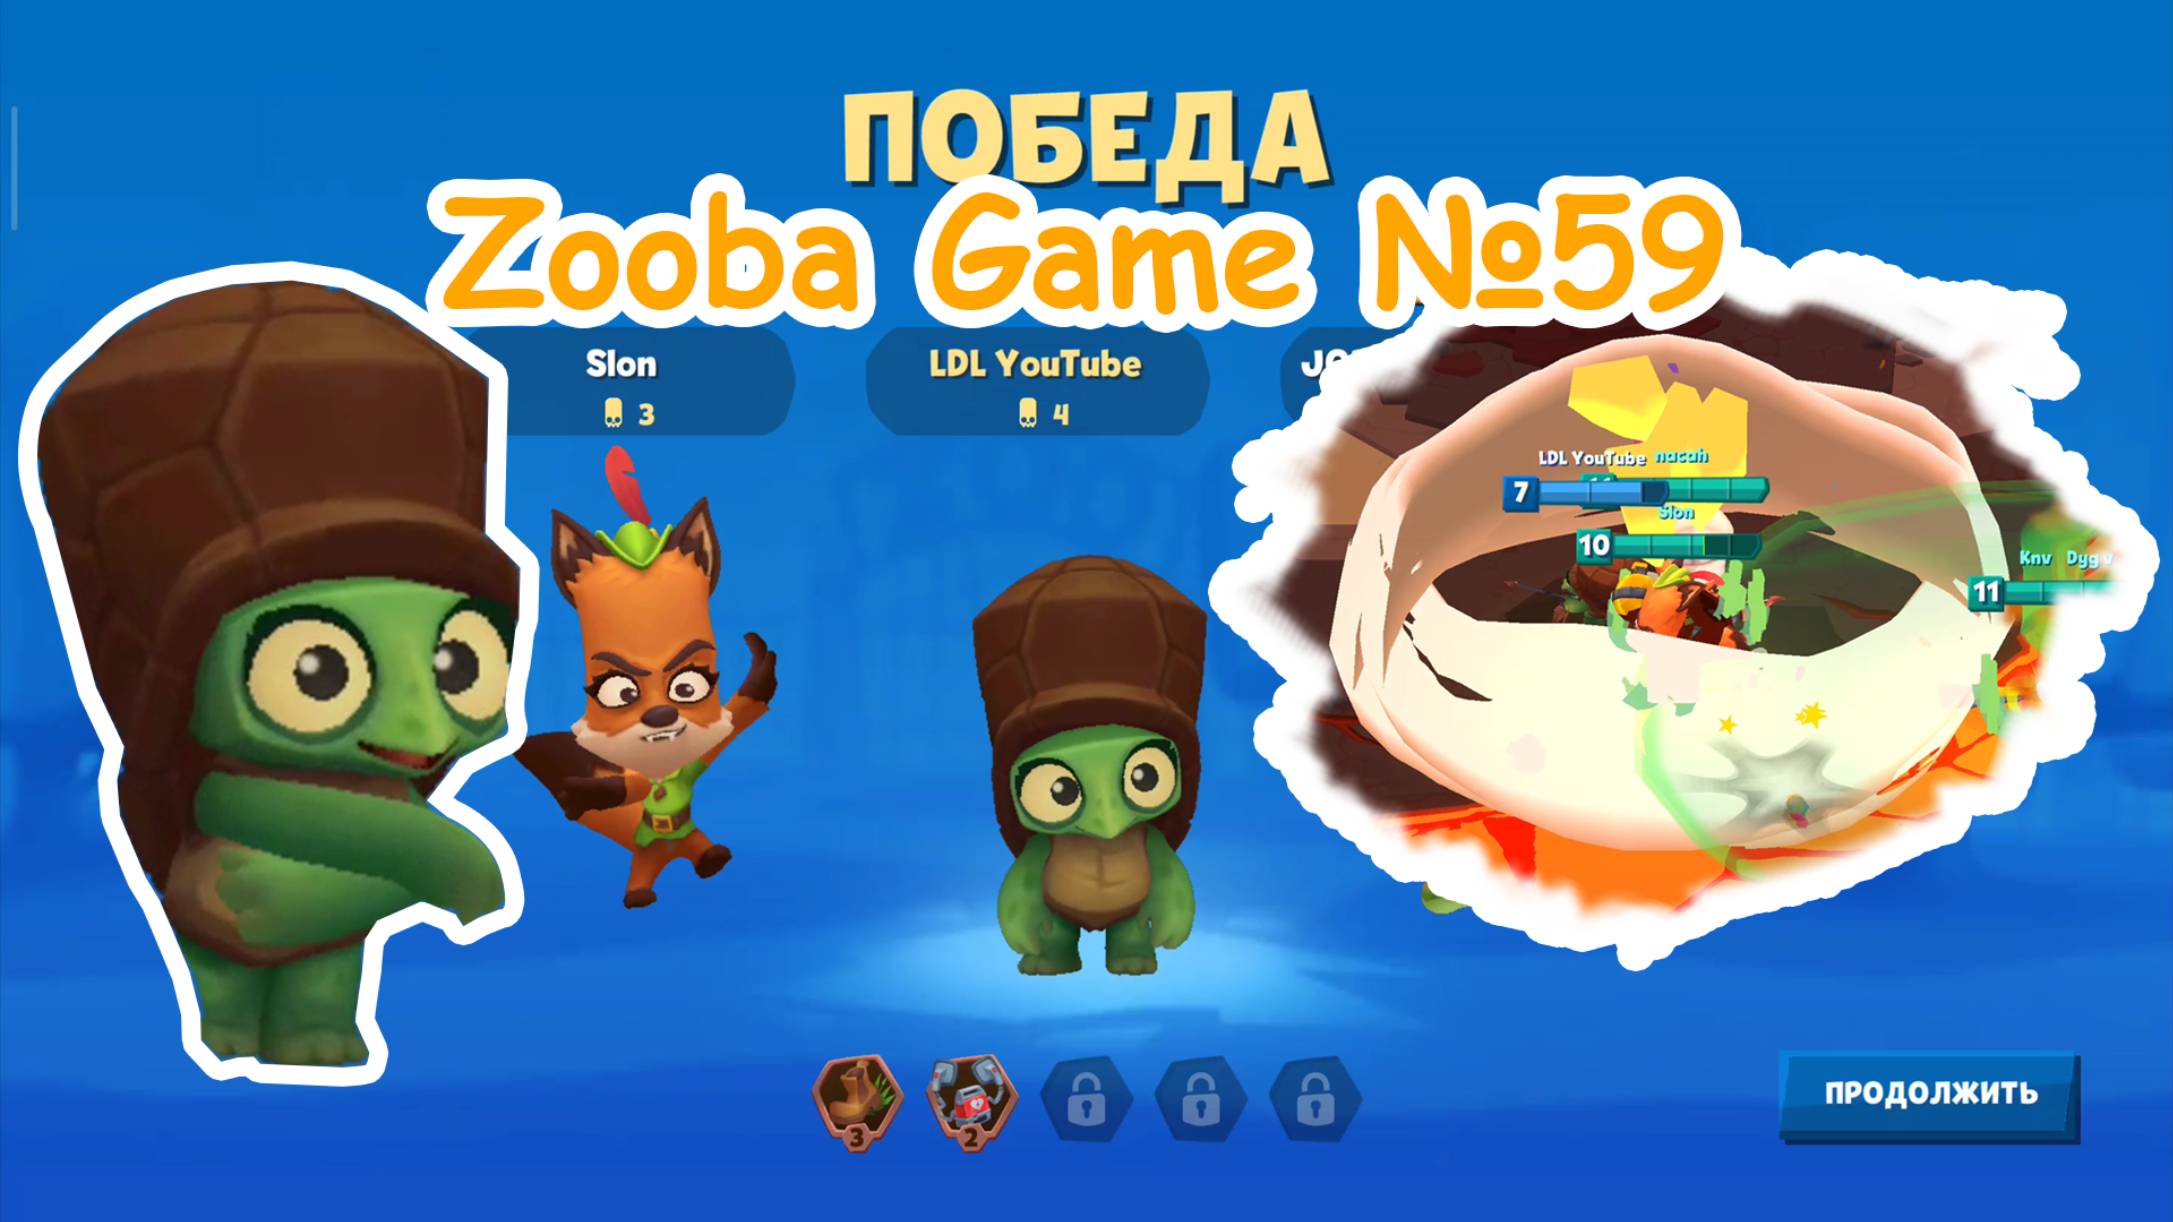 Zooba Game #59 #zooba